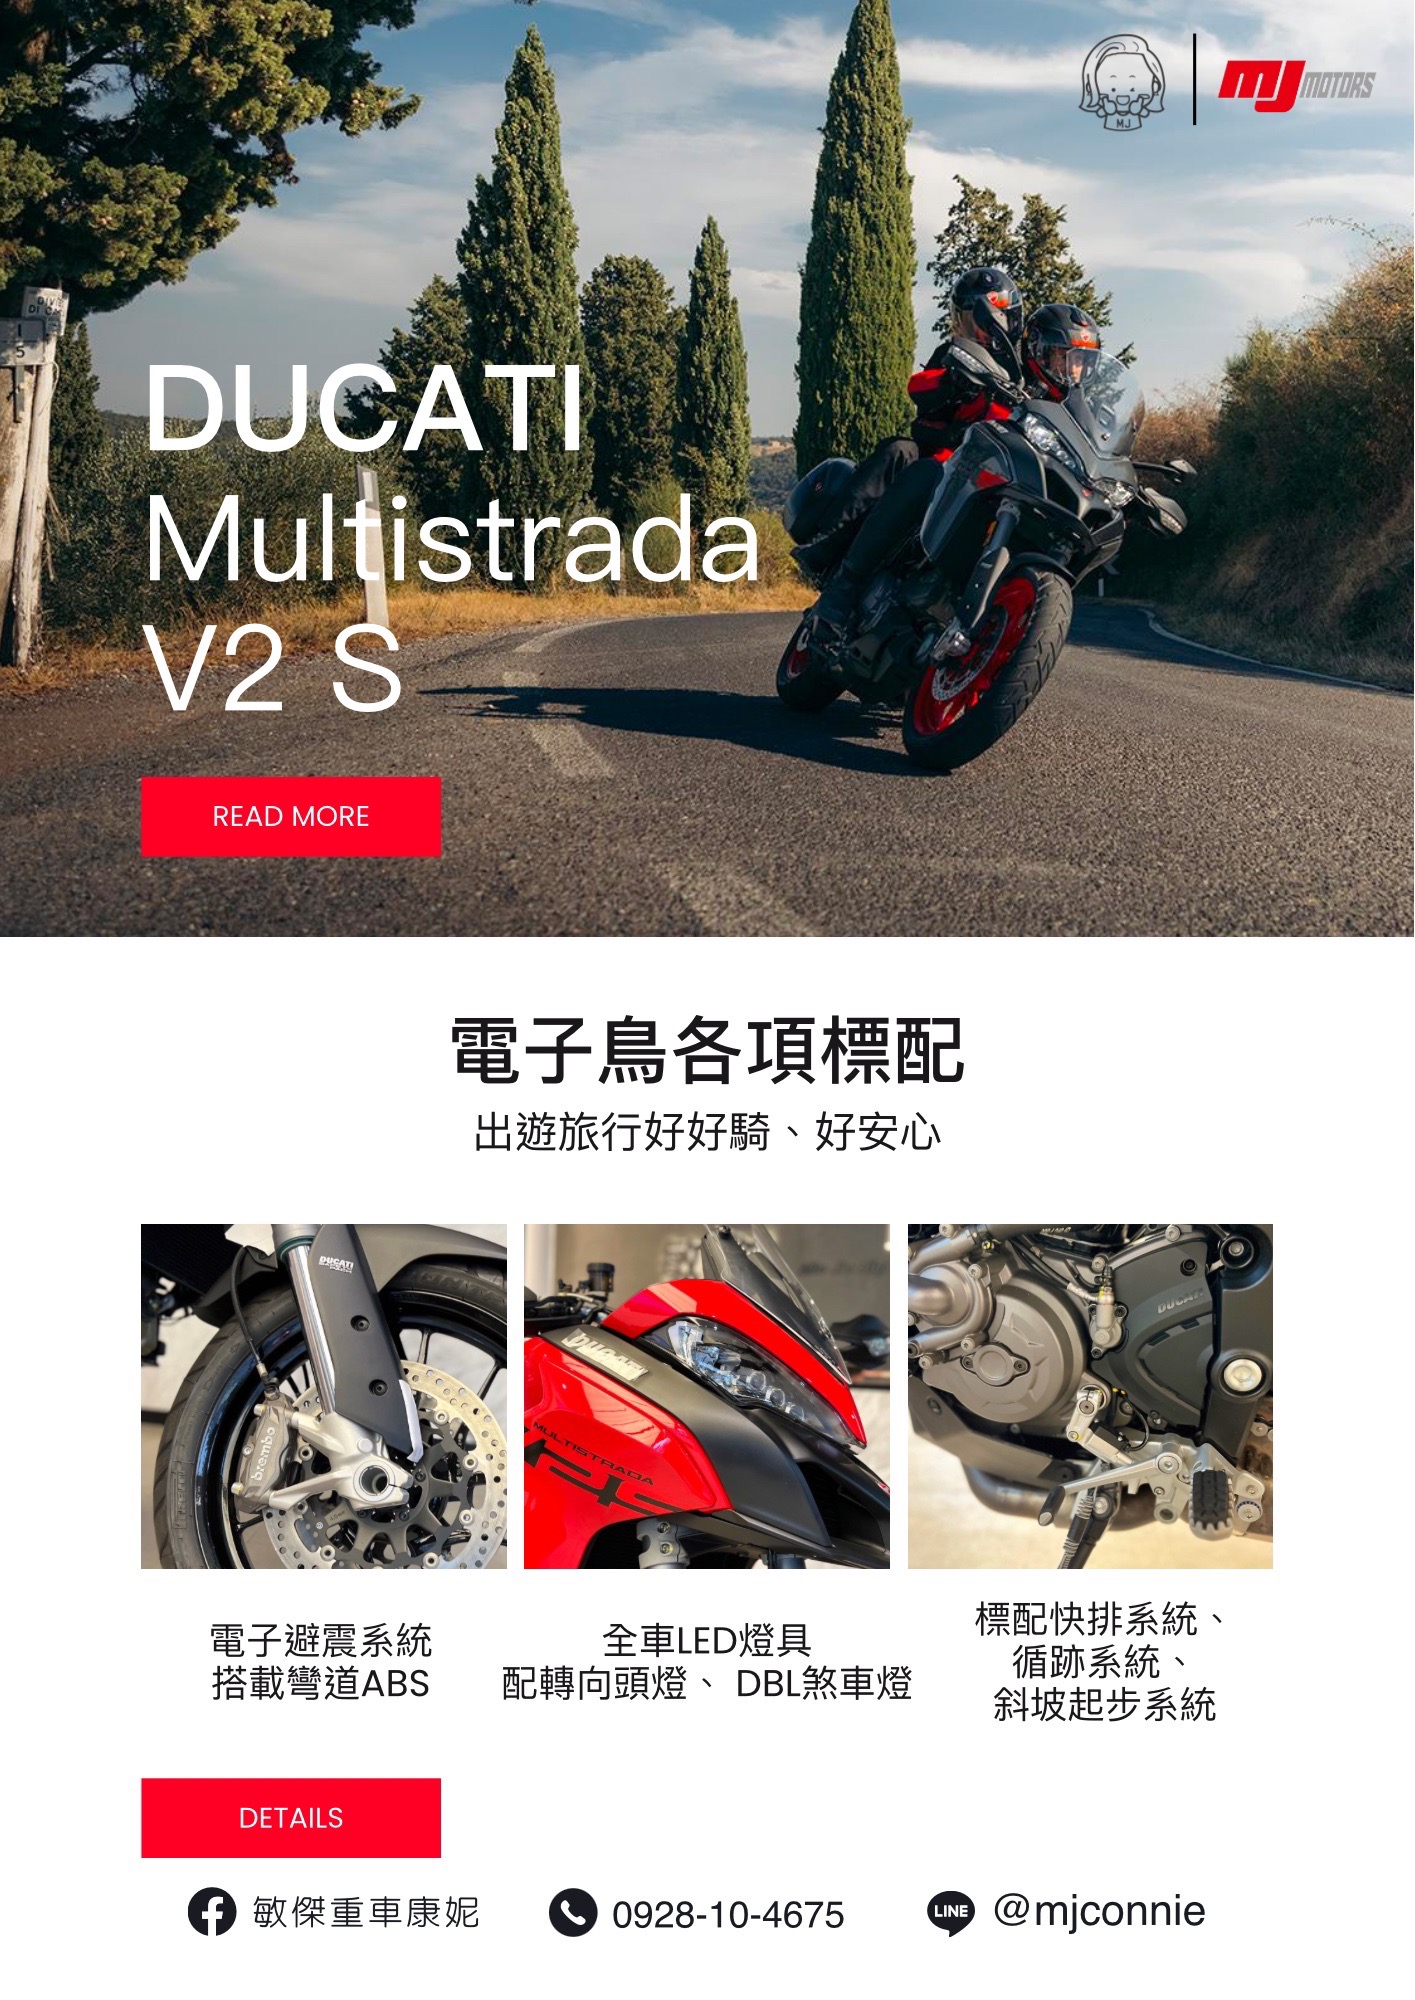 【敏傑車業資深銷售專員 康妮 Connie】Ducati Multistrada V2s - 「Webike-摩托車市」 『敏傑康妮』Ducati Multistrada V2 S  帶您往戶外景點走走~ 輕鬆克服不平路面 價格以實際為主